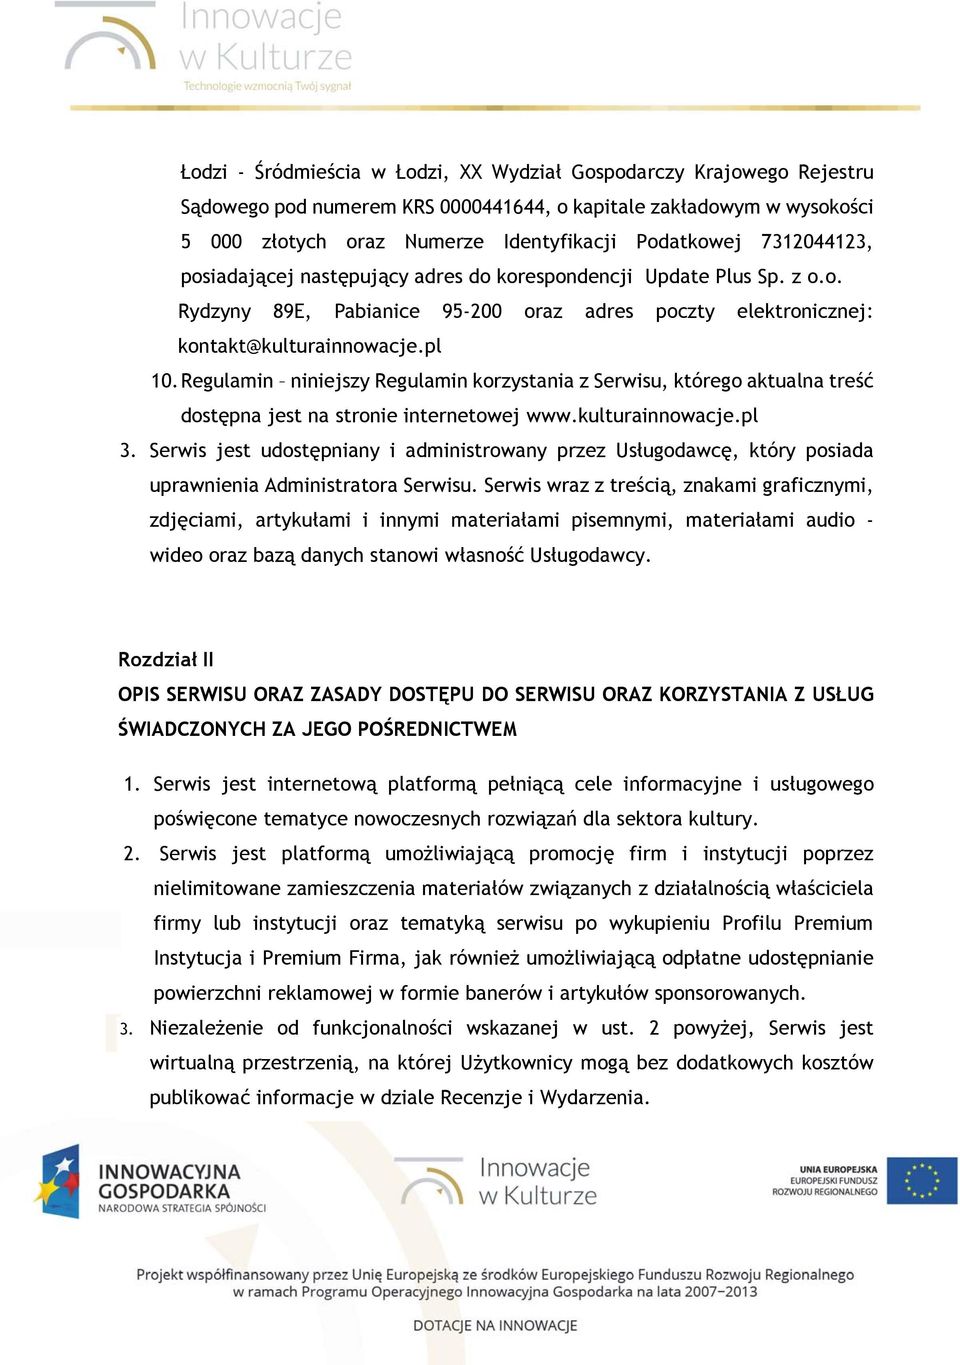 Regulamin niniejszy Regulamin korzystania z Serwisu, którego aktualna treść dostępna jest na stronie internetowej www.kulturainnowacje.pl 3.